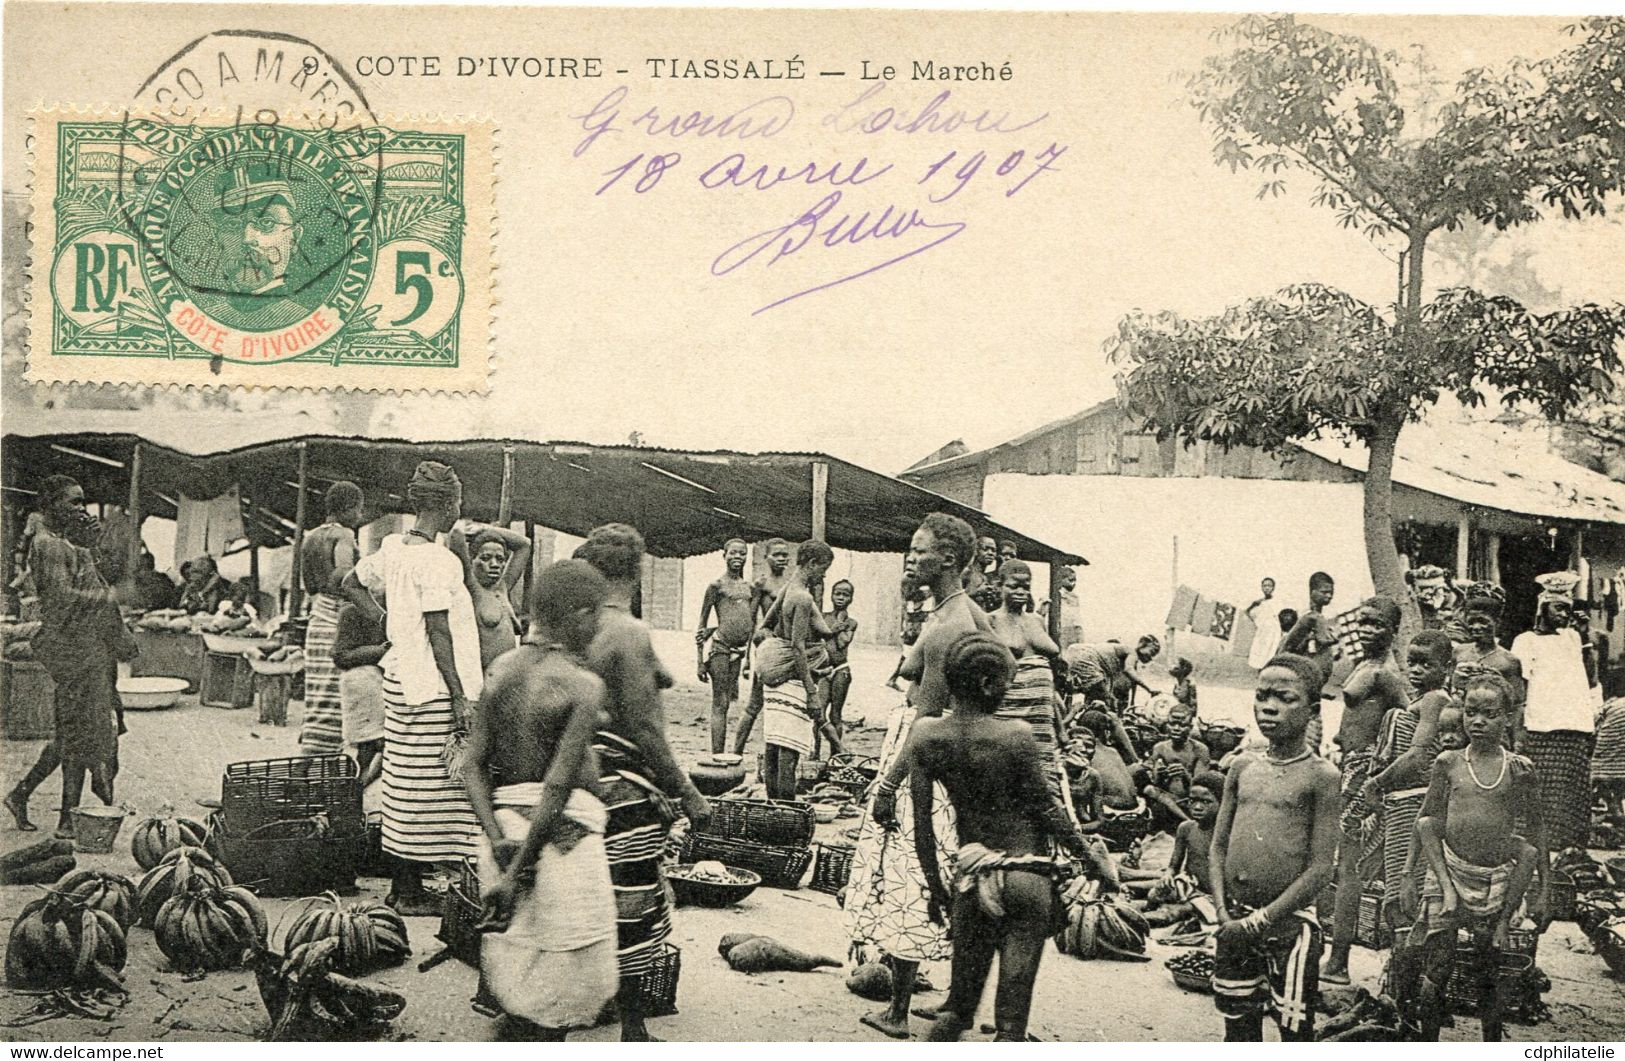 COTE D'IVOIRE CARTE POSTALE -TIASSALE -LE MARCHE DEPART (LOANGO) A MARSEILLE 18 AVRIL 07 L.M. N°1 POUR LA FRANCE - Lettres & Documents